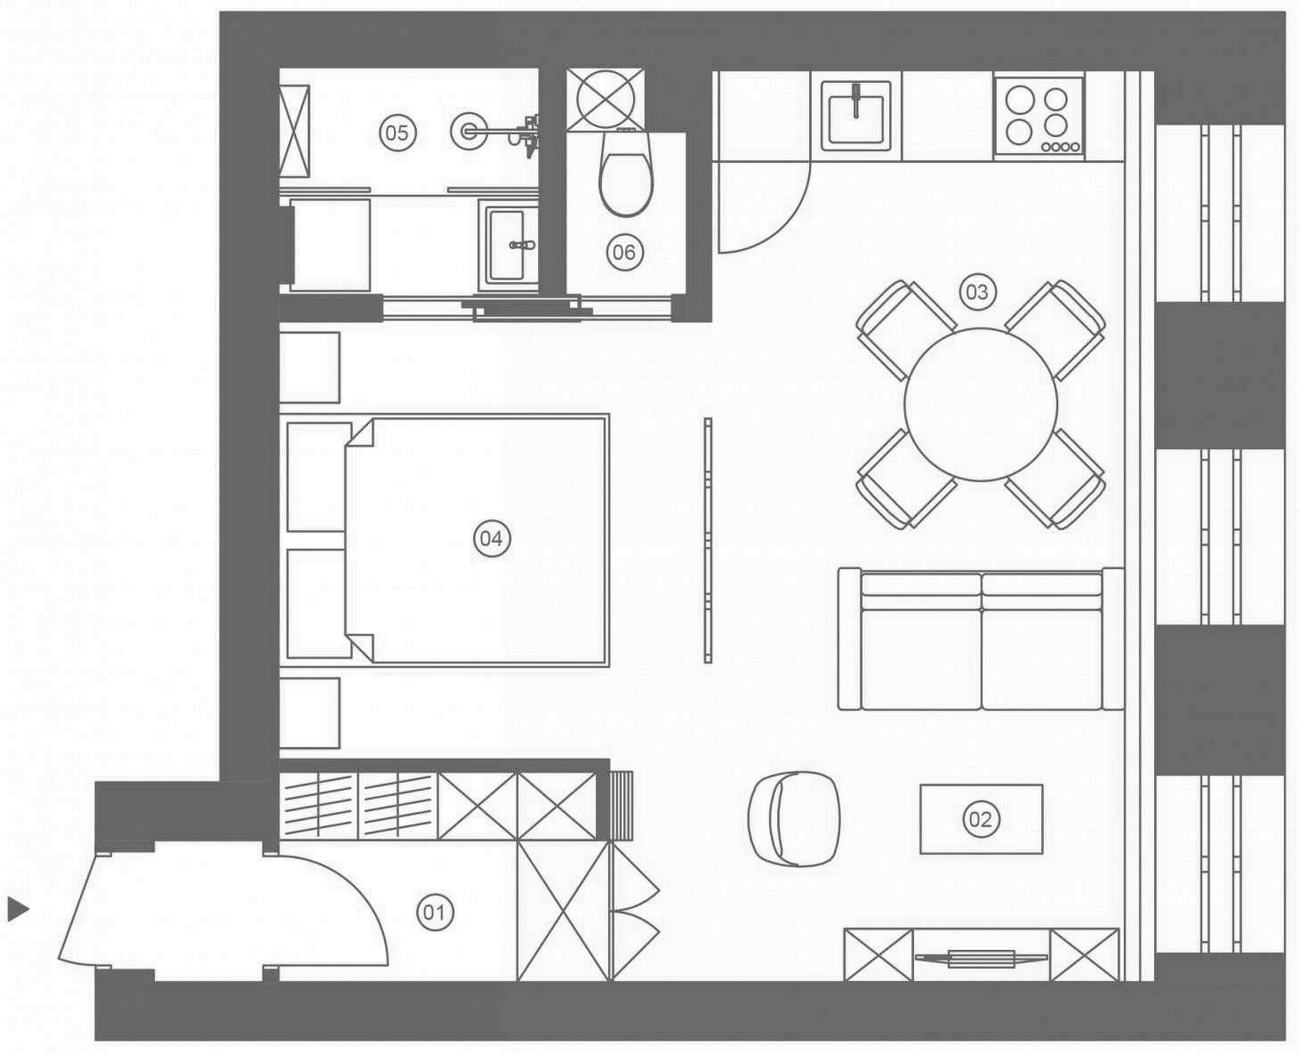 Sơ đồ thiết kế nội thất căn hộ có diện tích 33m² do 2 NTK Andrey Simonov và Ekaterina Savenko cung cấp.